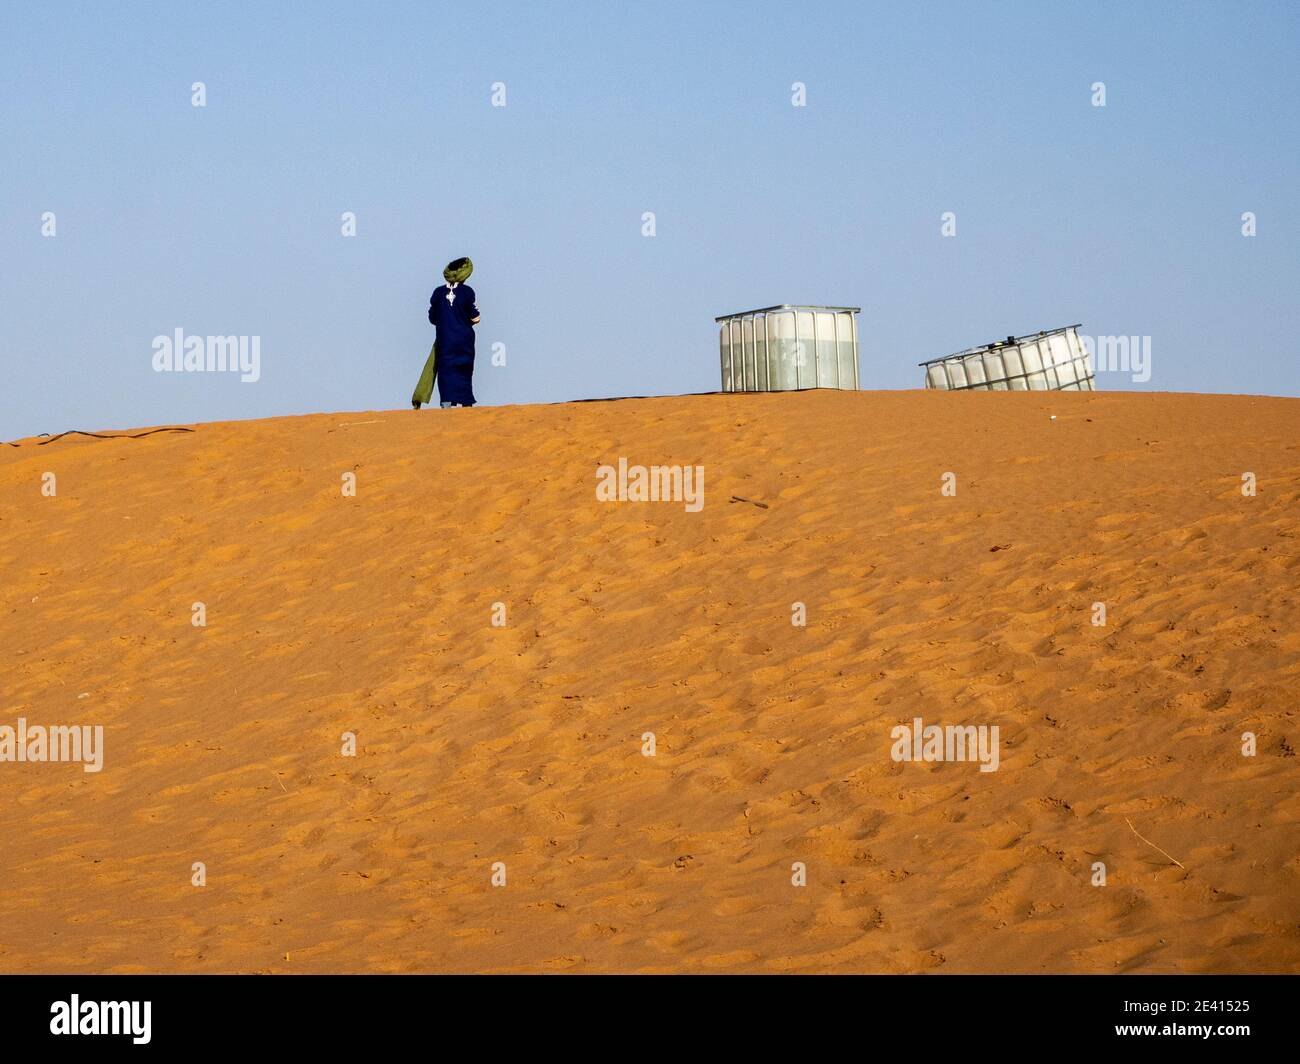 Un homme en robe berbère bleue typique avec turban, à côté de deux réservoirs d'eau en plastique sur une grande dune de sable dans le désert du Sahara marocain. Banque D'Images